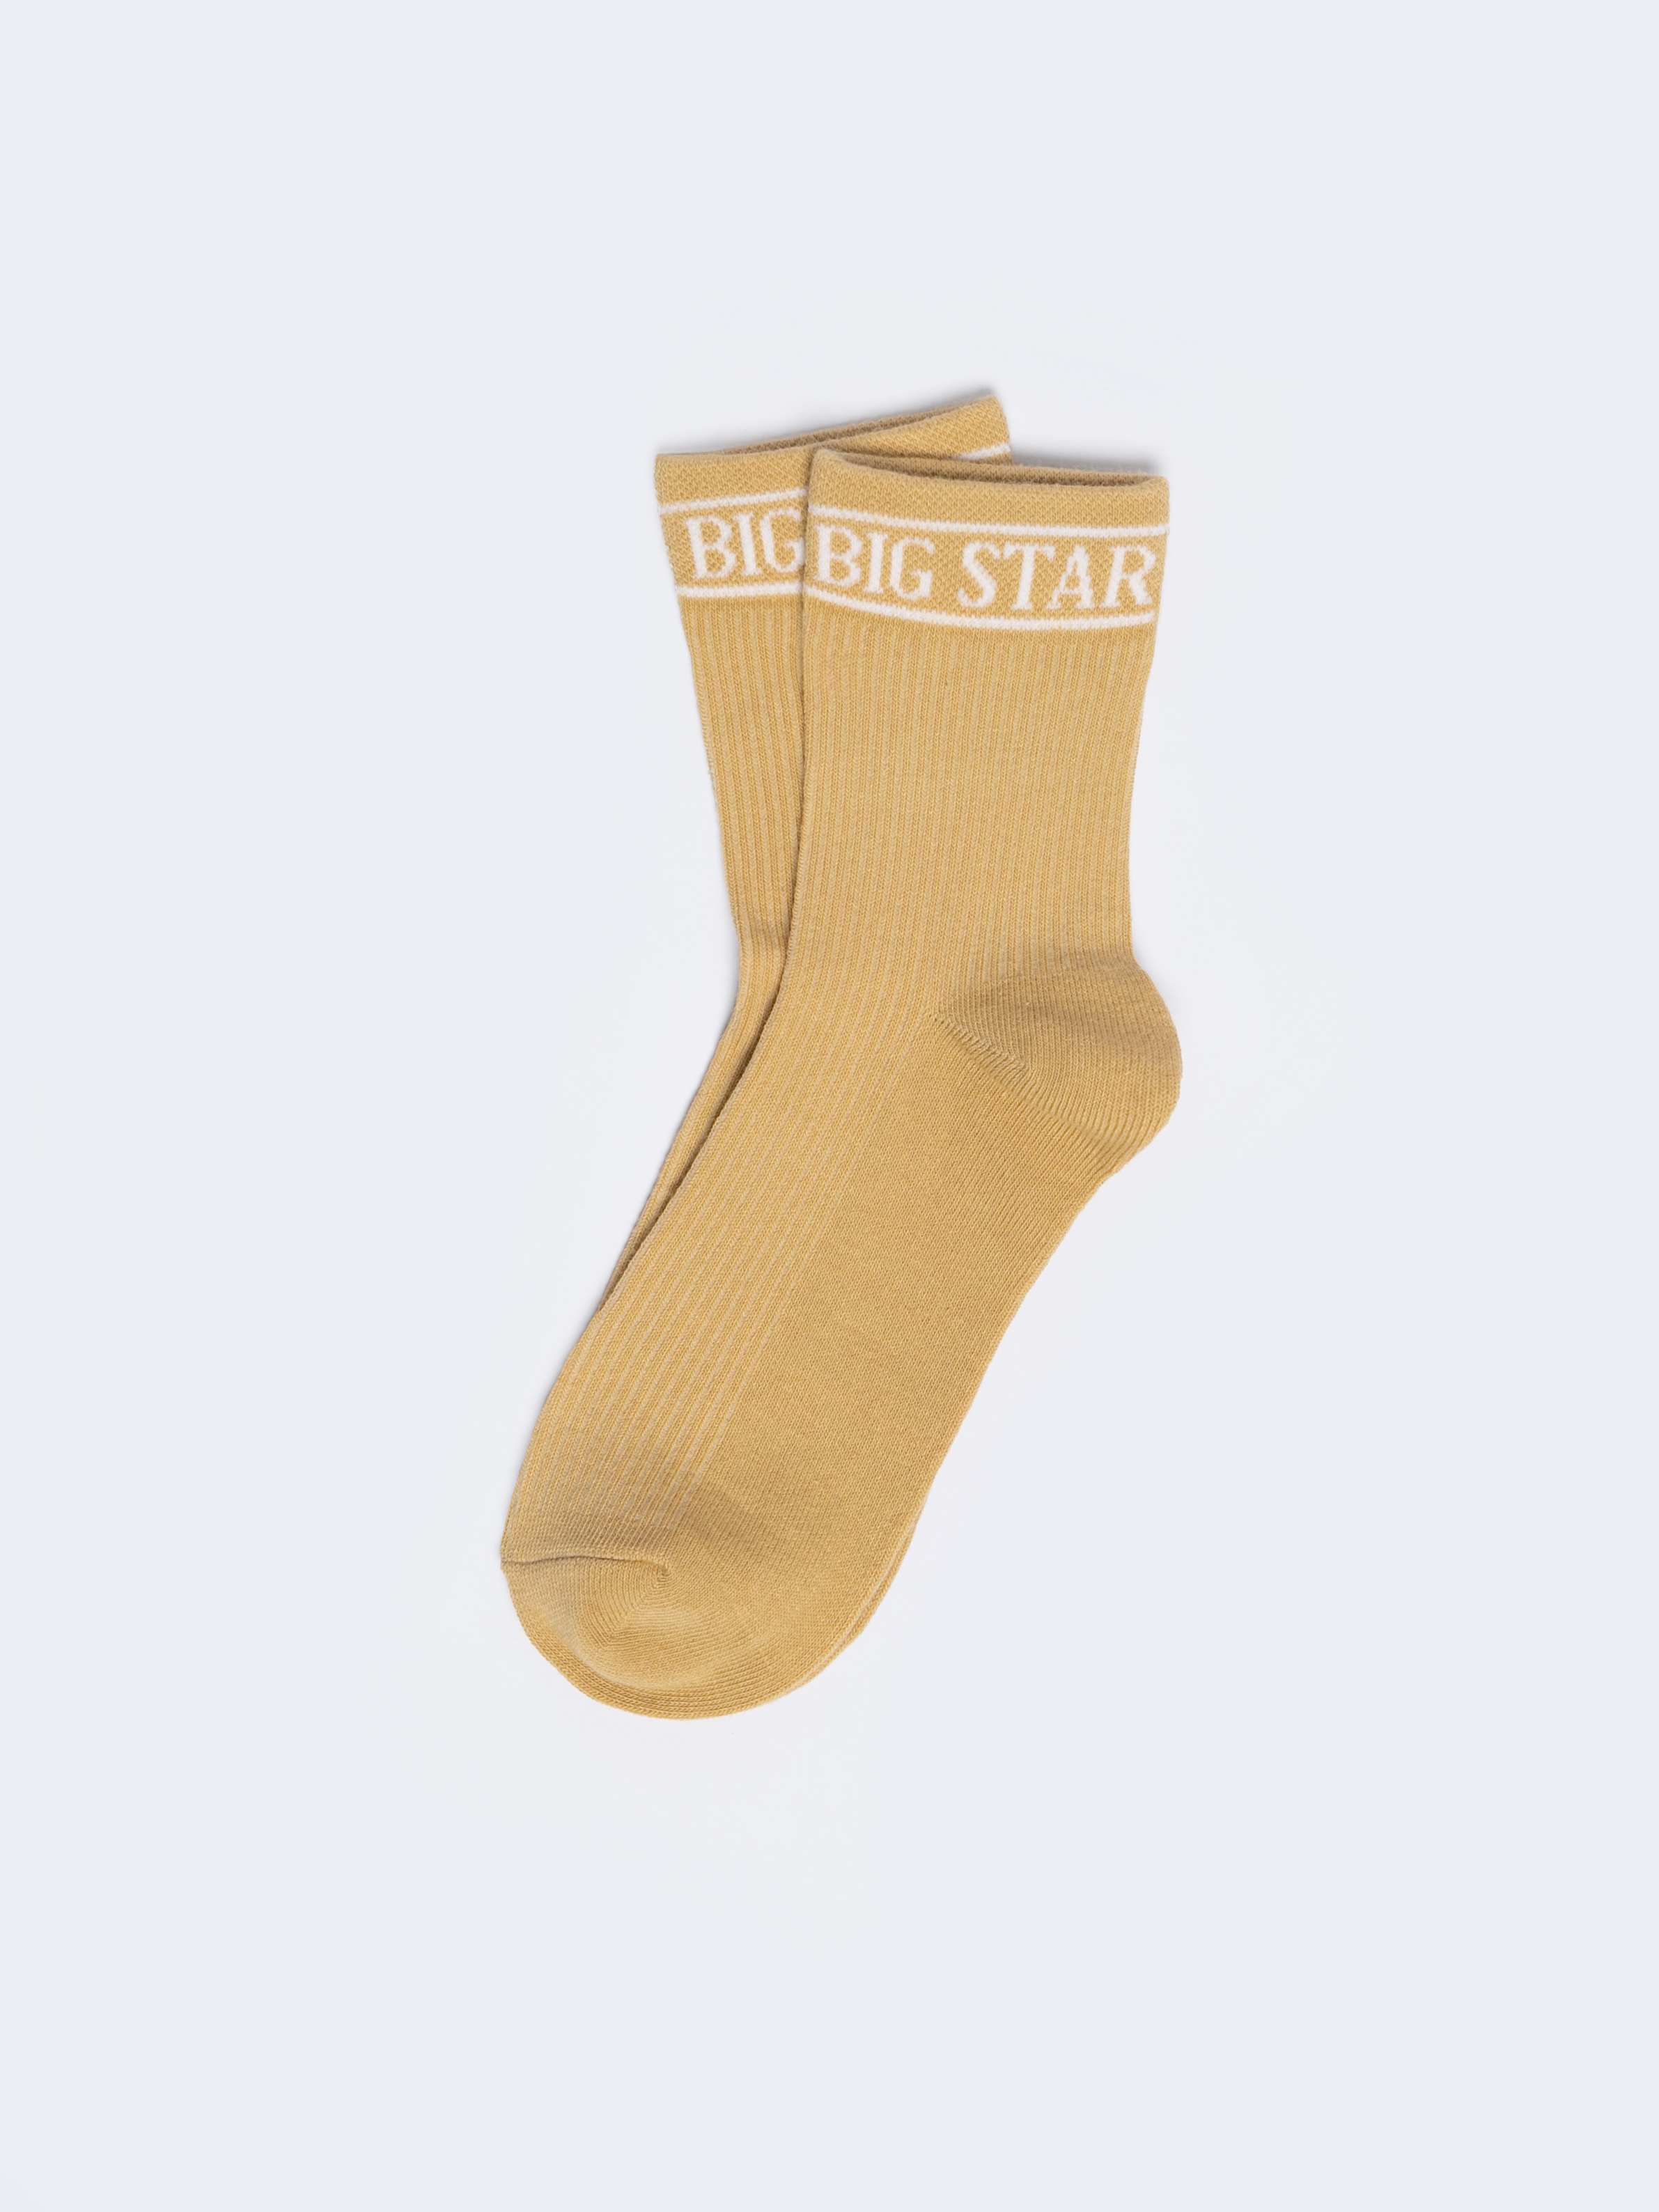 Big Star Woman's Standard Socks 210494  801